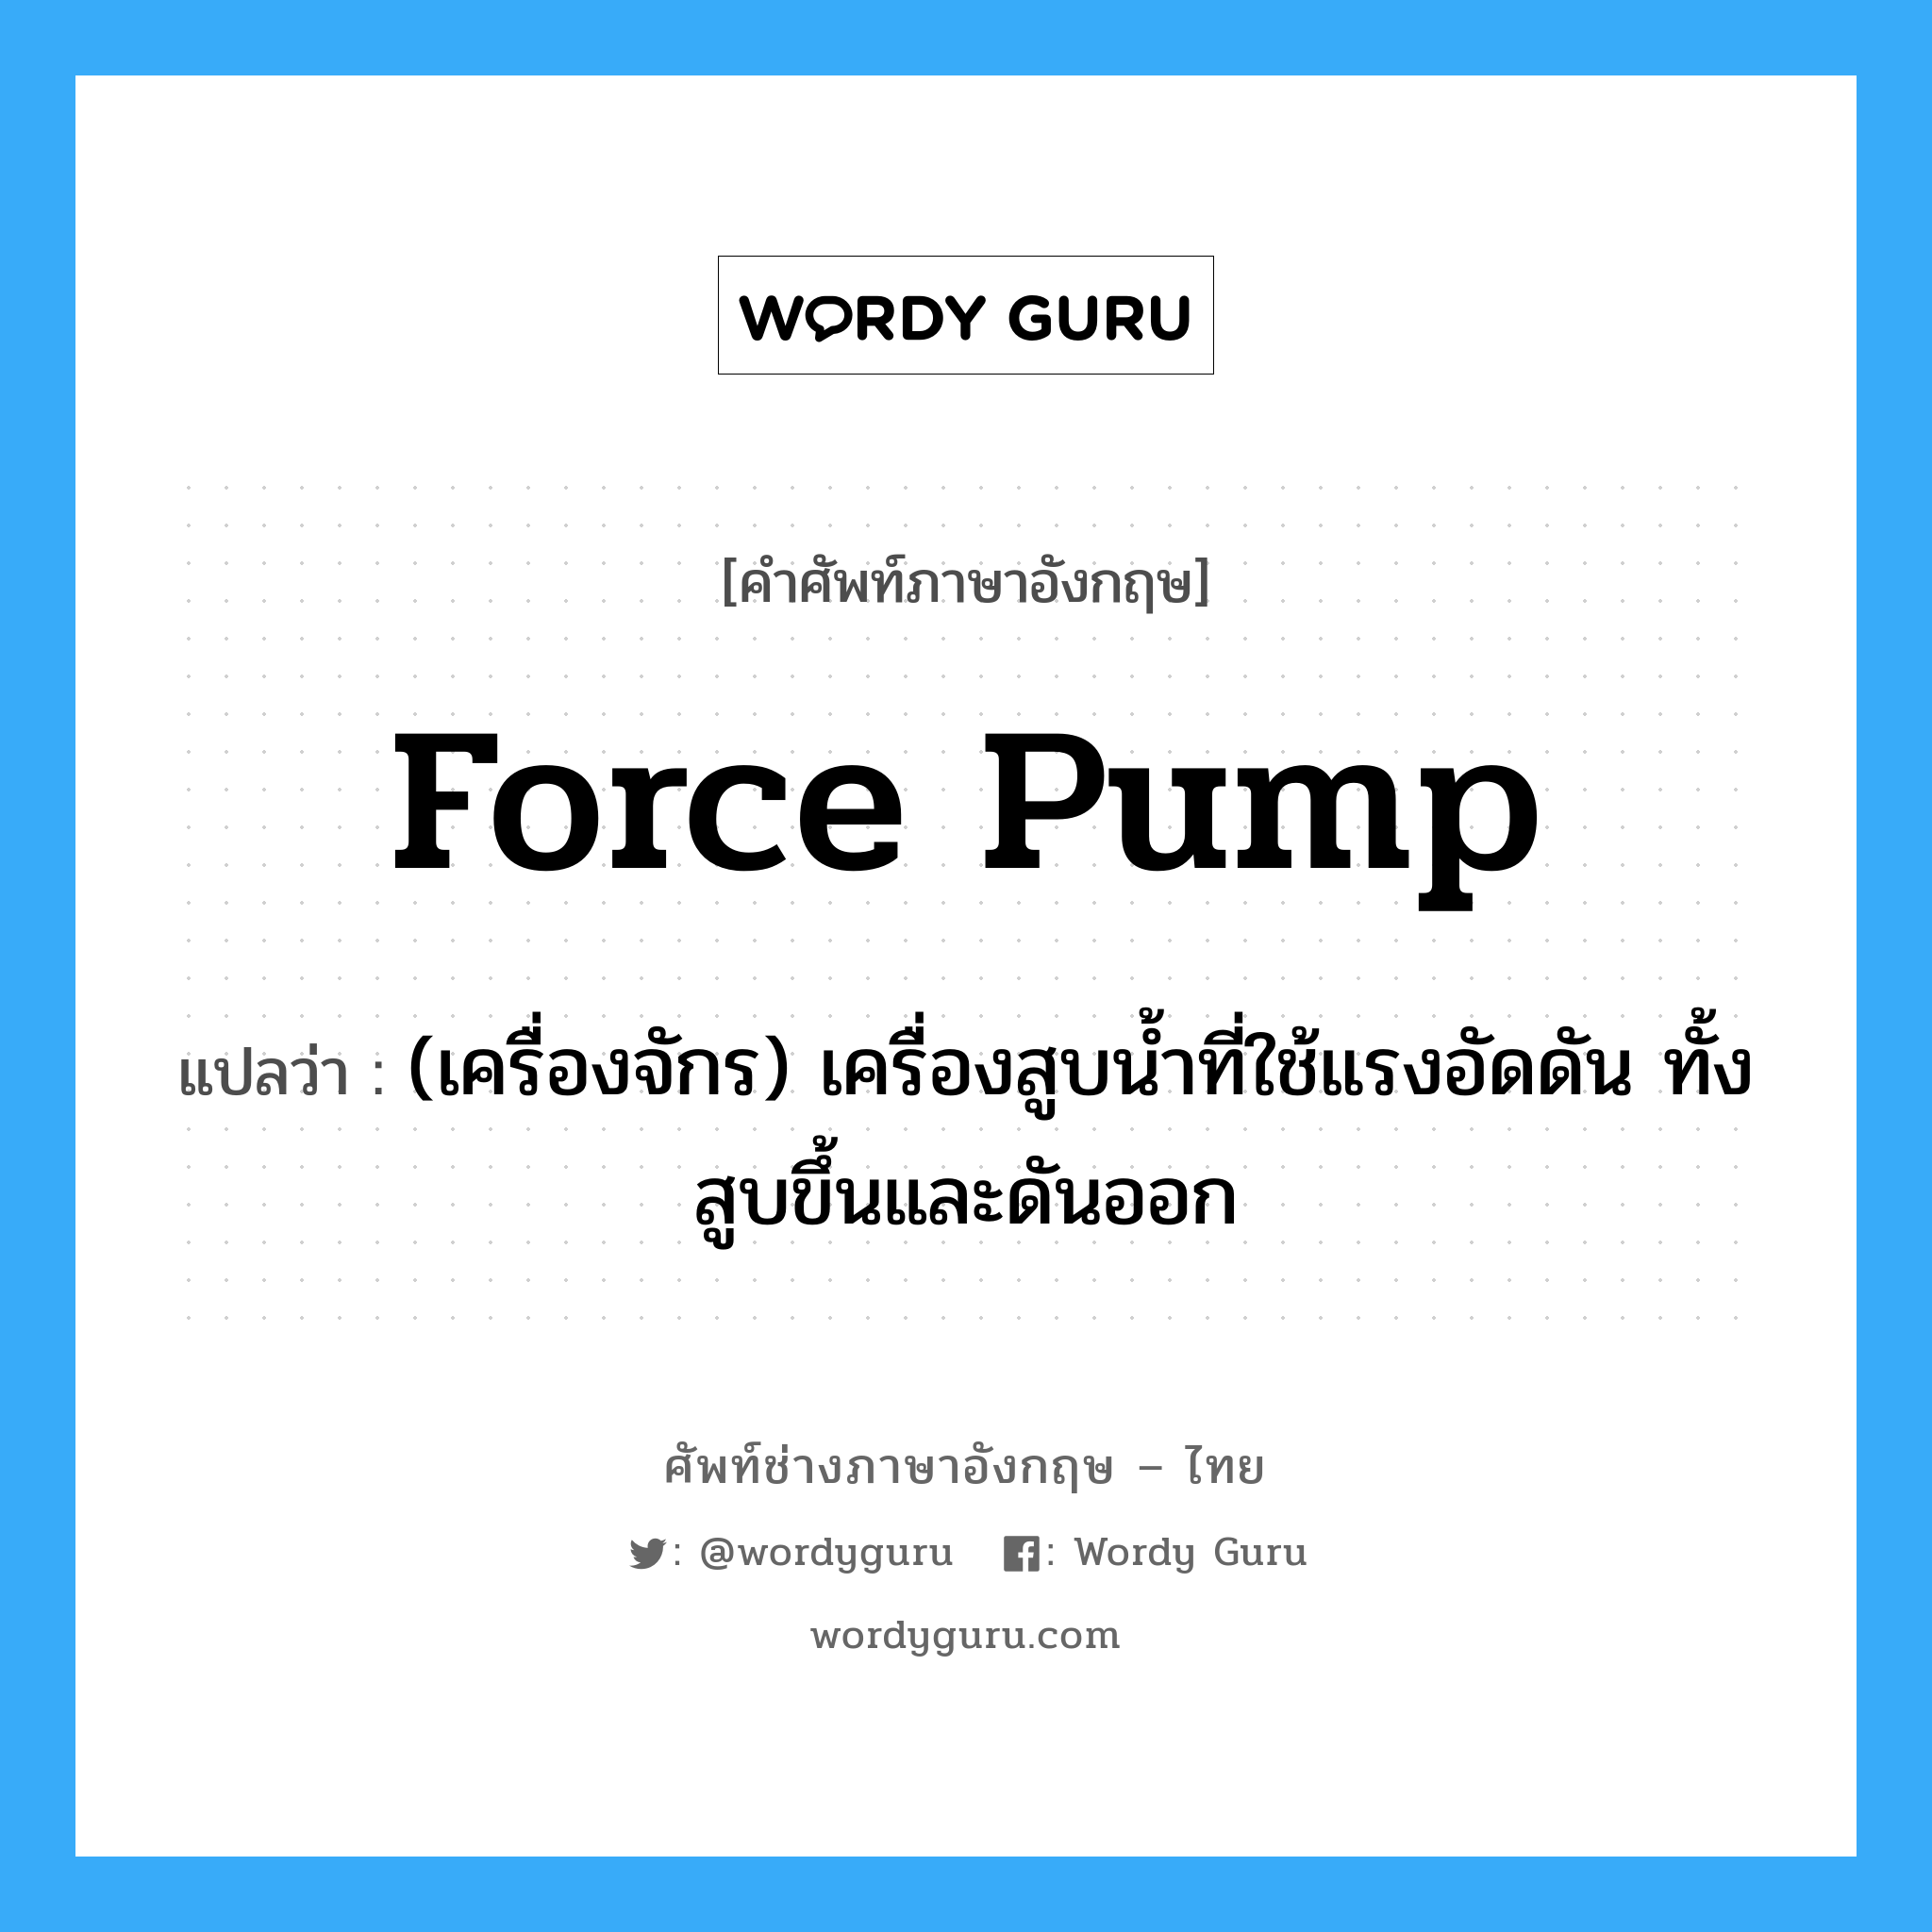 force pump แปลว่า?, คำศัพท์ช่างภาษาอังกฤษ - ไทย force pump คำศัพท์ภาษาอังกฤษ force pump แปลว่า (เครื่องจักร) เครื่องสูบน้ำที่ใช้แรงอัดดัน ทั้งสูบขึ้นและดันออก